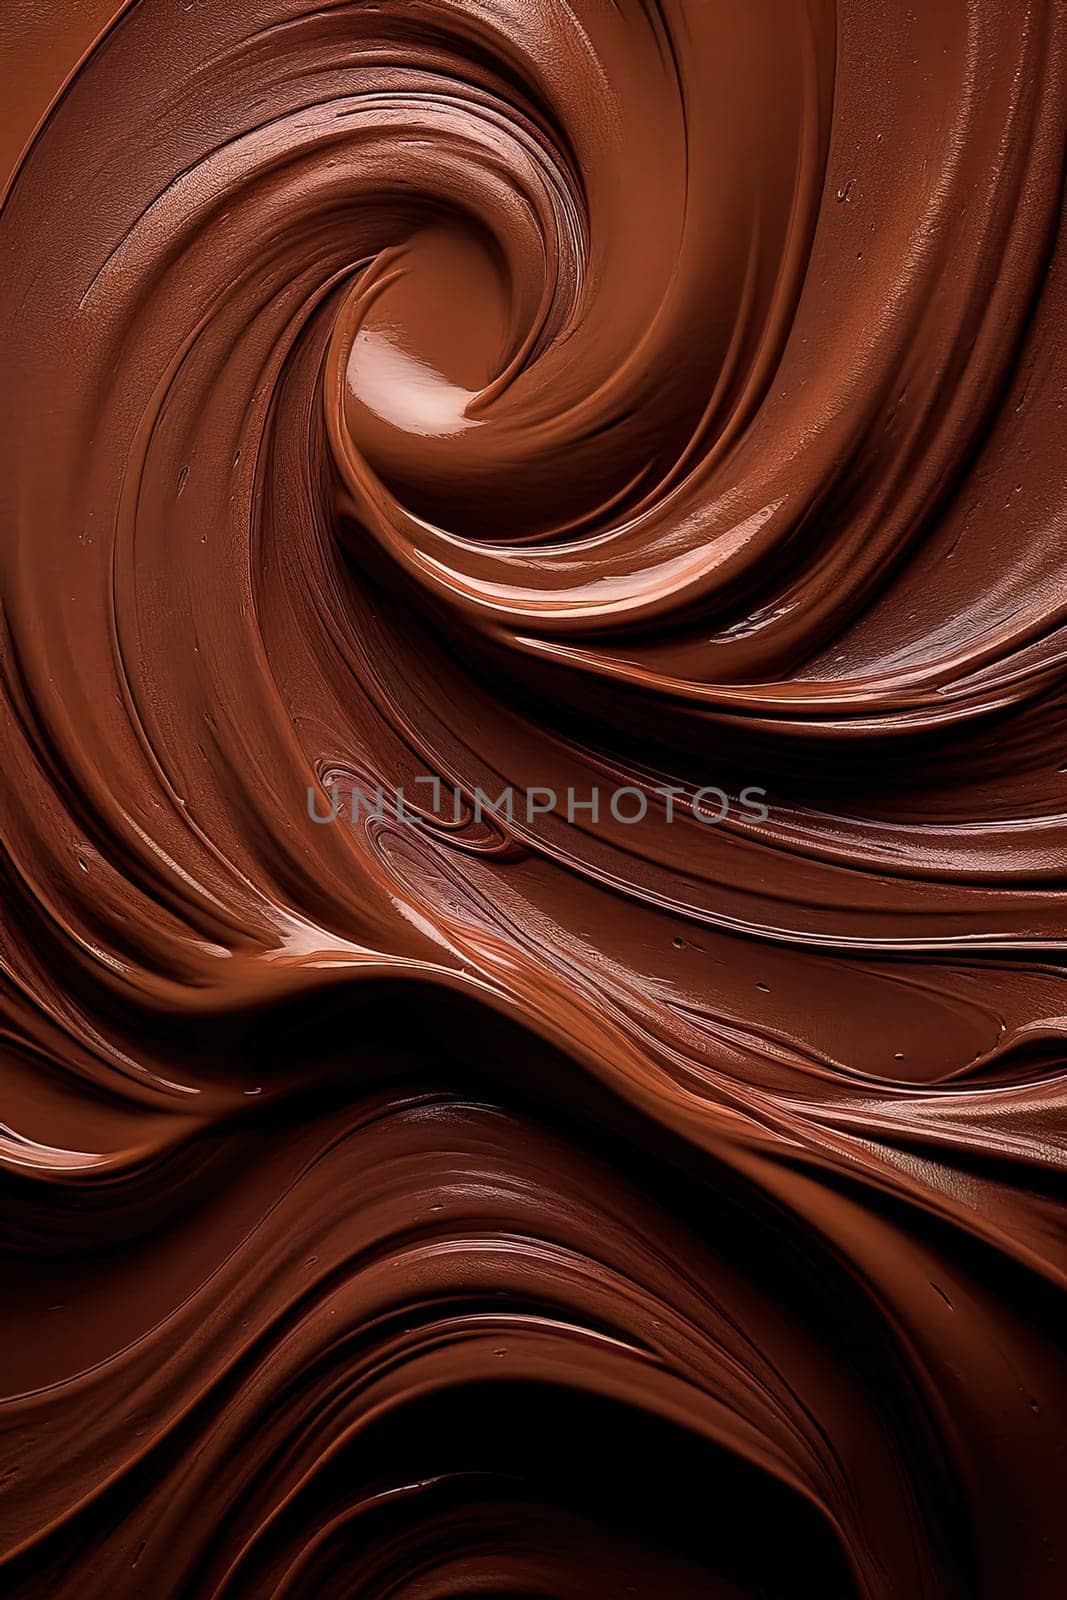 Hot chocolate swirl texture.